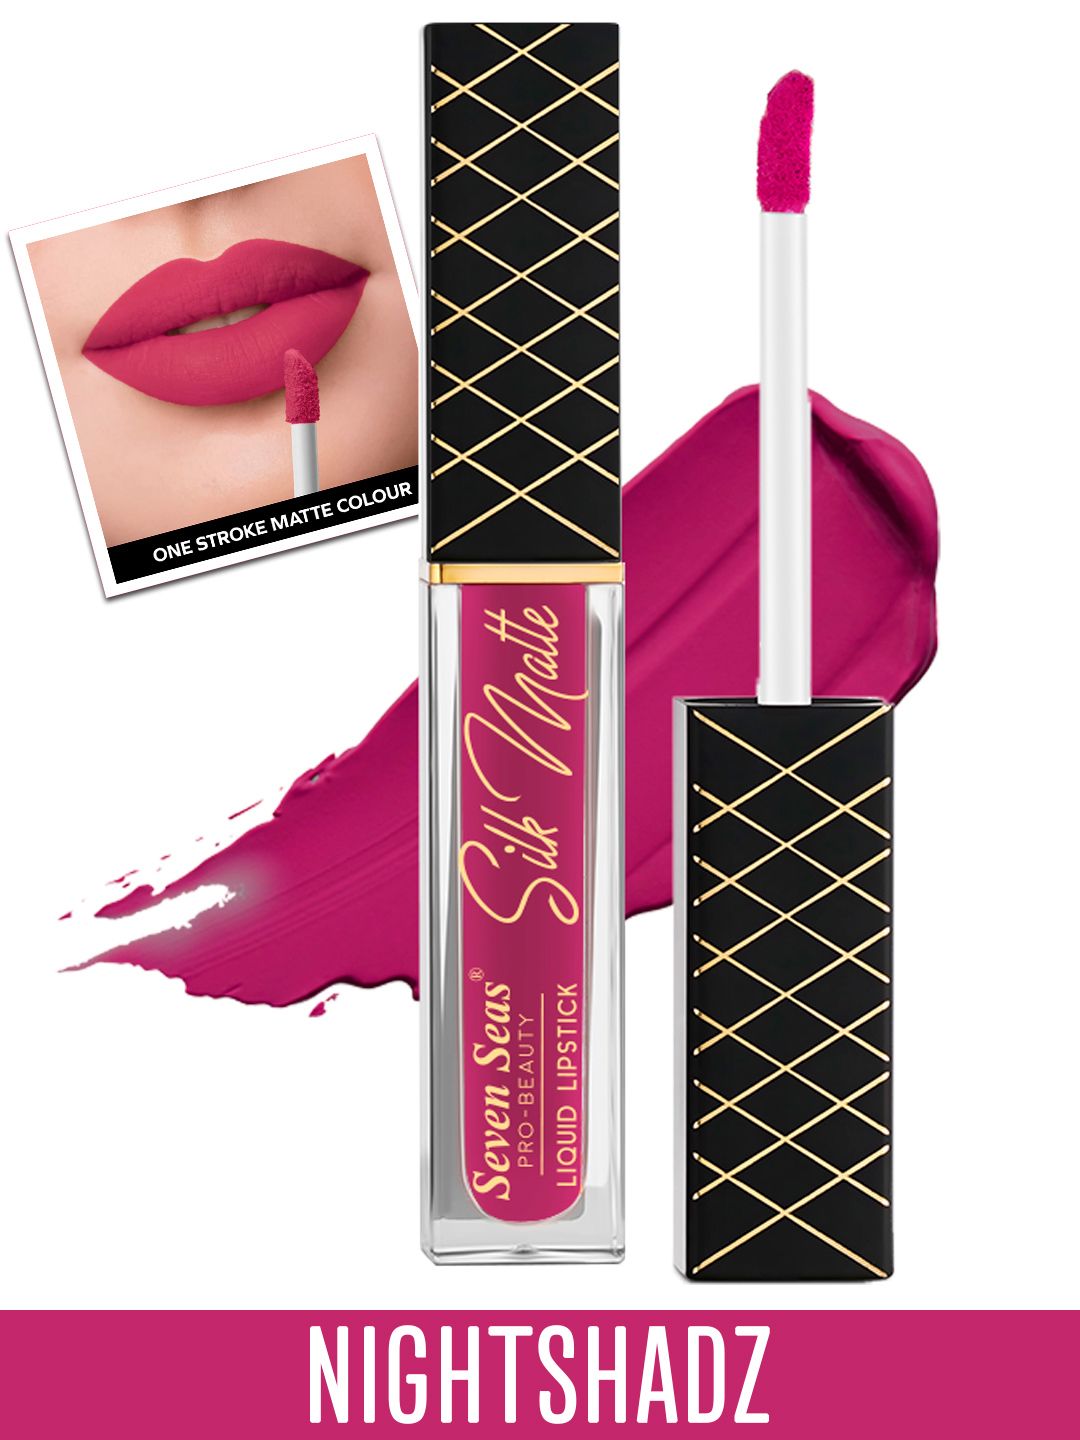 Seven Seas Silk Matte Liquid Lipstick 8g - NightShadz Price in India